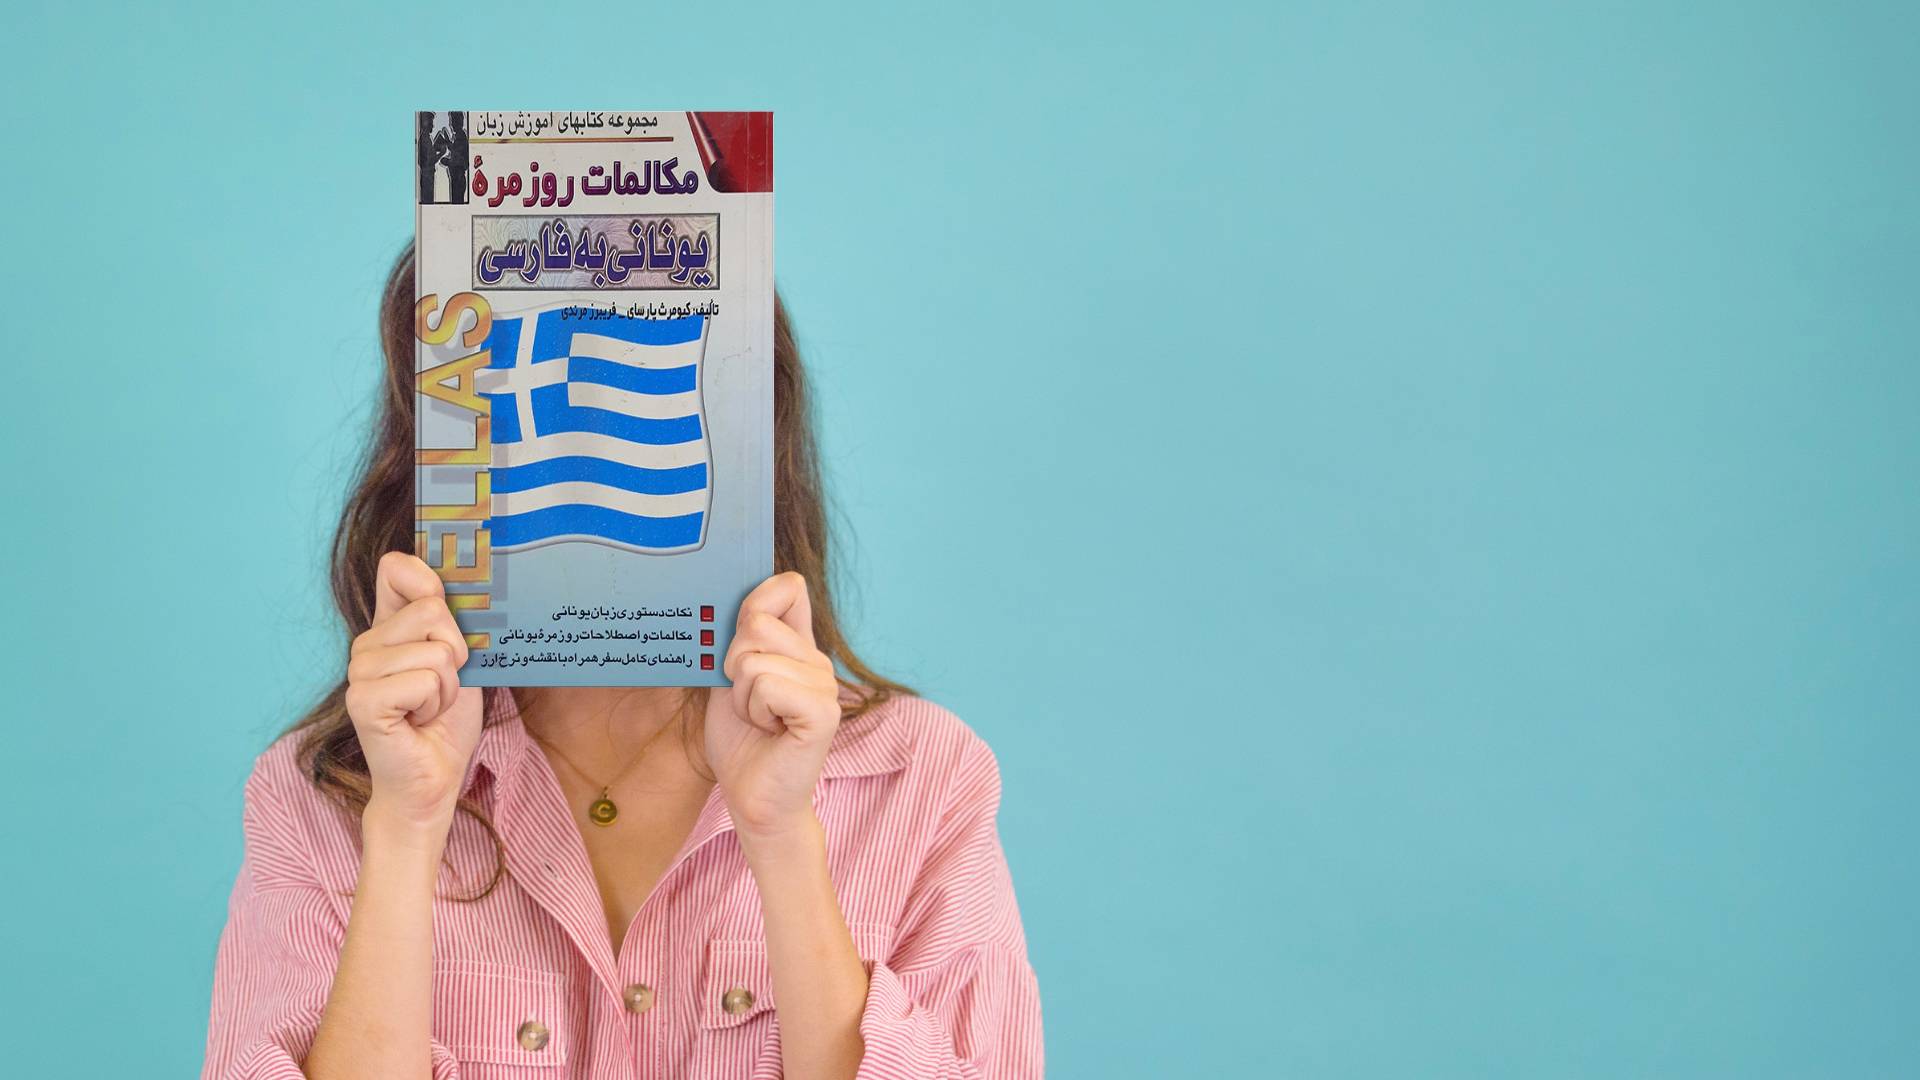 خرید کتاب زبان | زبان استور | کتاب خودآموز زبان یونانی | کتاب مکالمات روزمره یونانی به فارسی